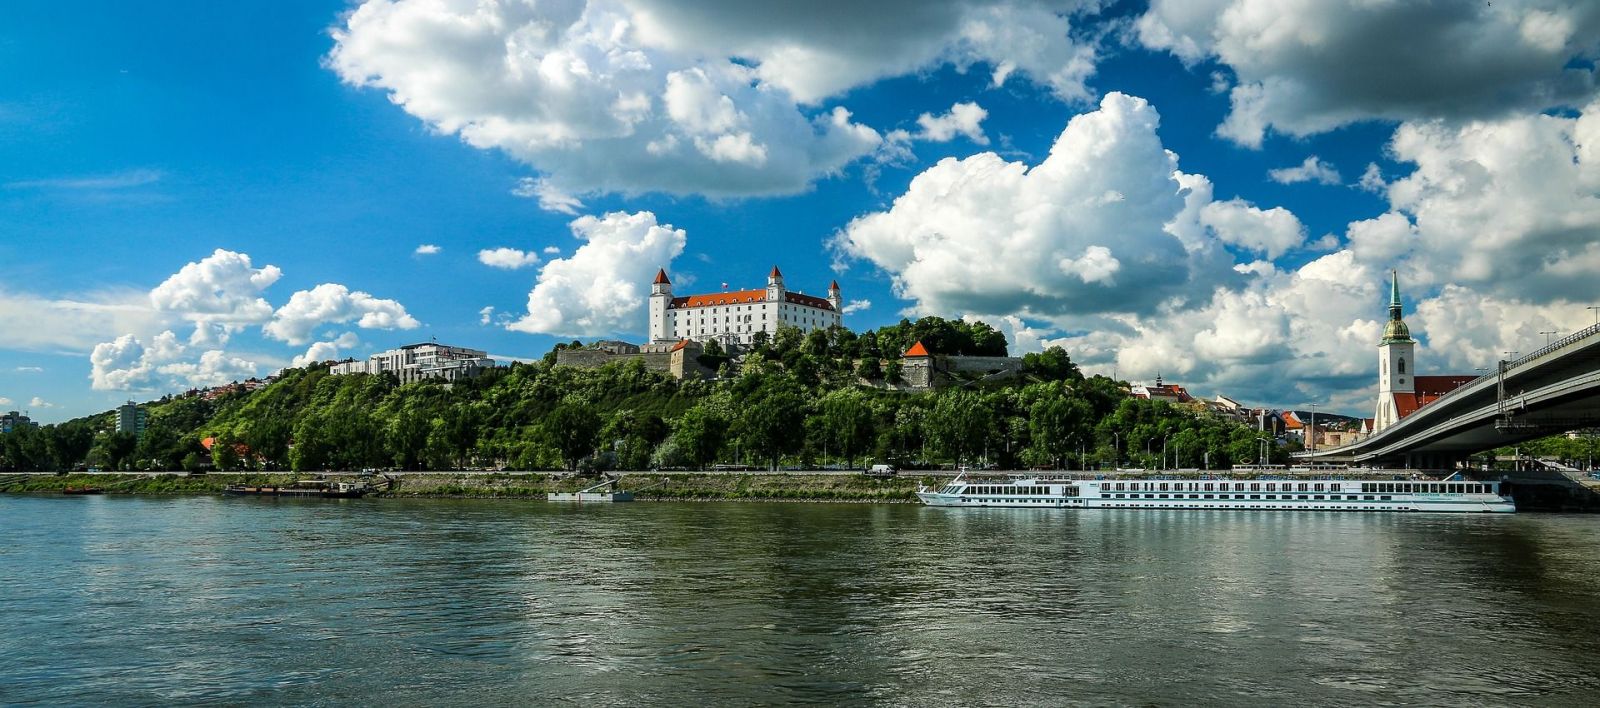 Bratislava miesto upravených trávnikov vysadí lúky. Zabojuje tak proti klimatickej zmene